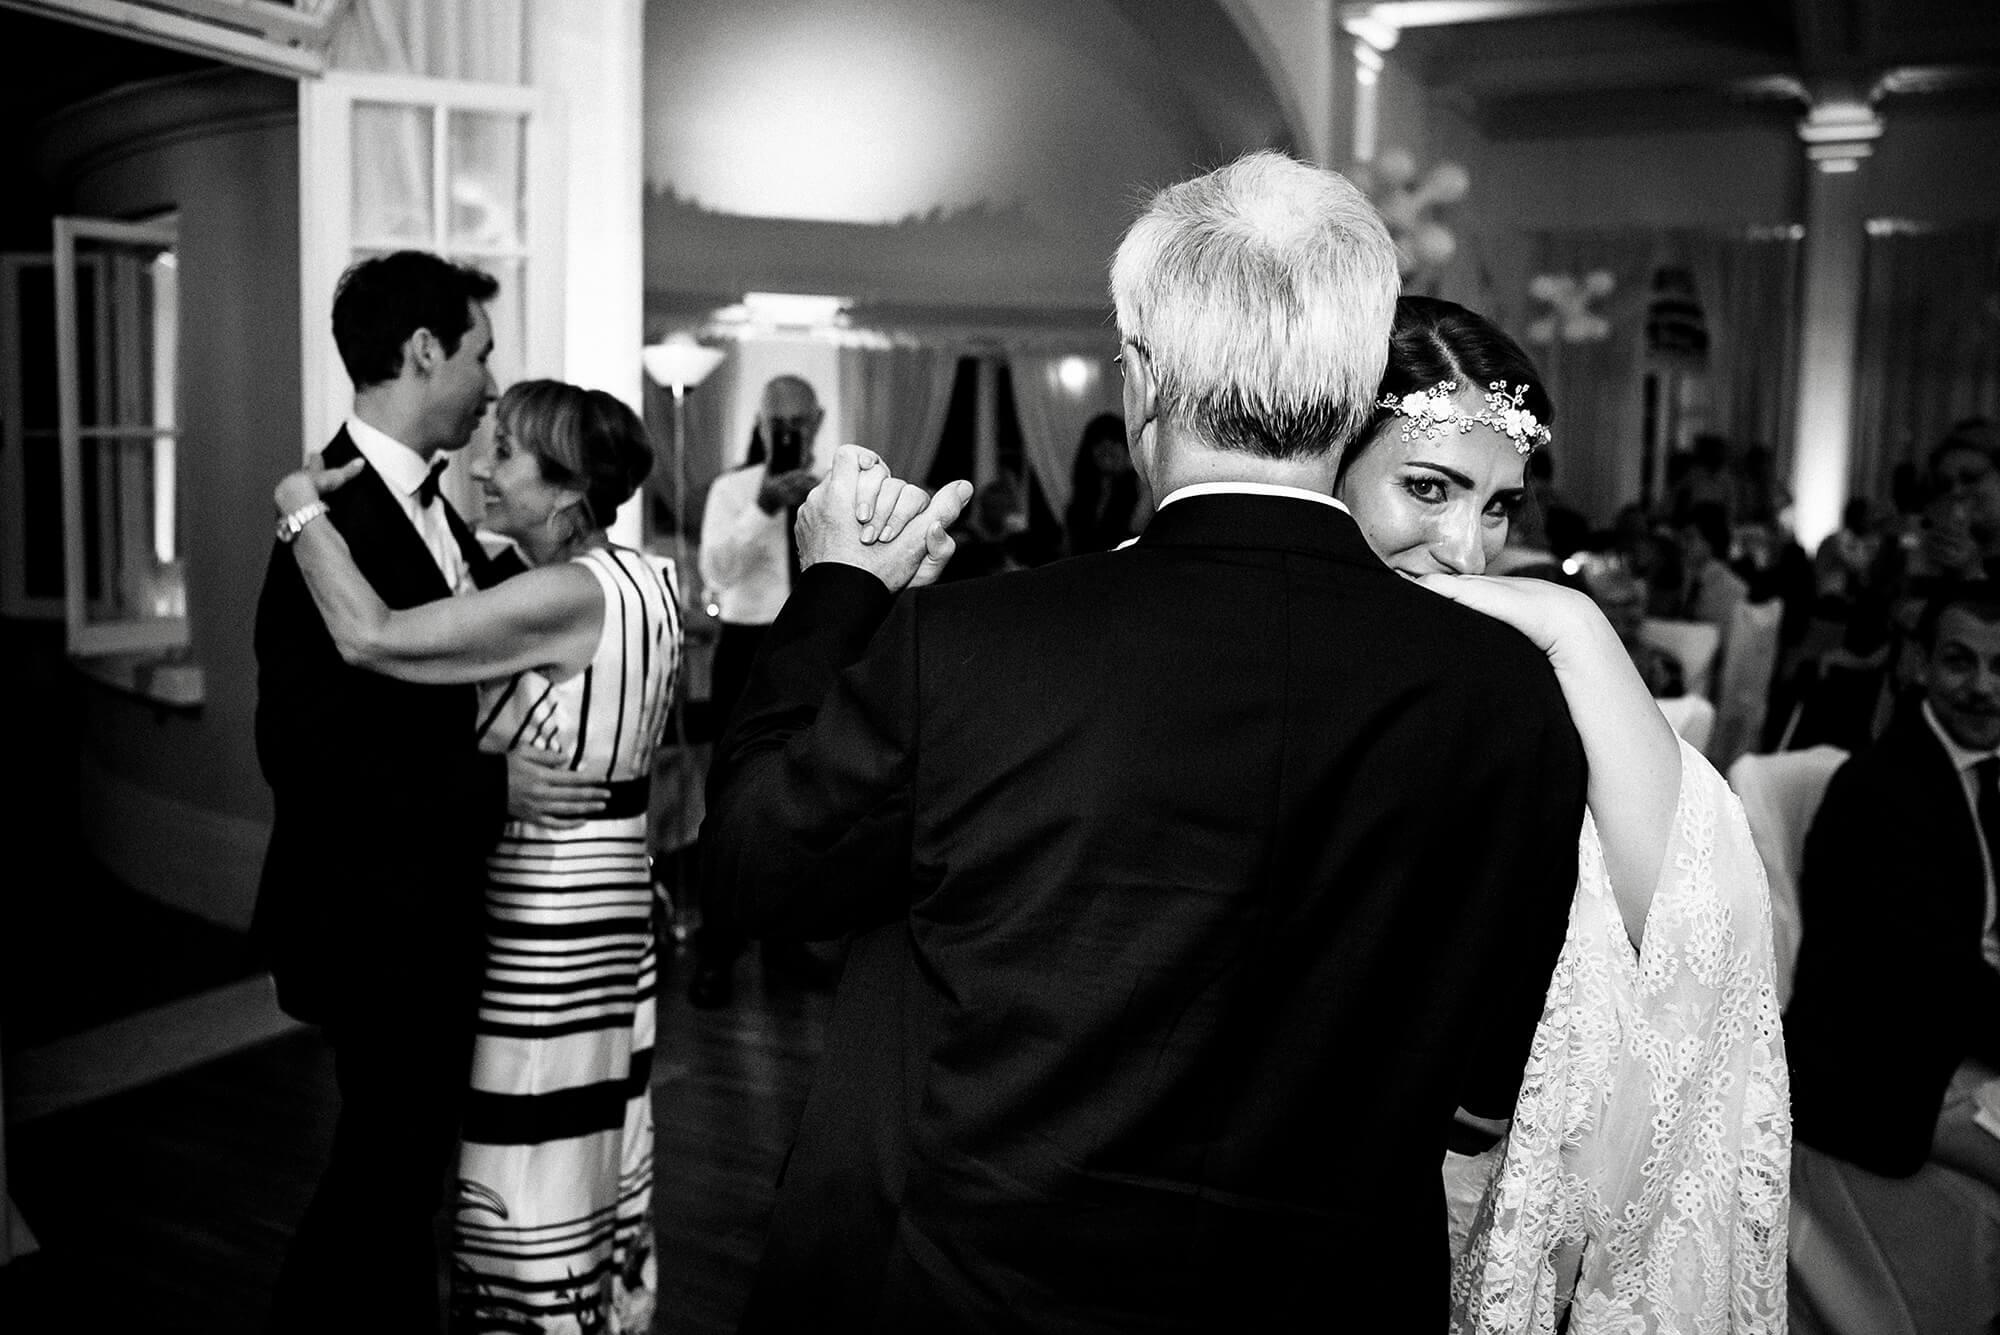 Fotografia del ballo genitori durante il matrimonio realizzata alla location per matrimoni Buca Cena, a Sanremo, in provincia di Imperia.